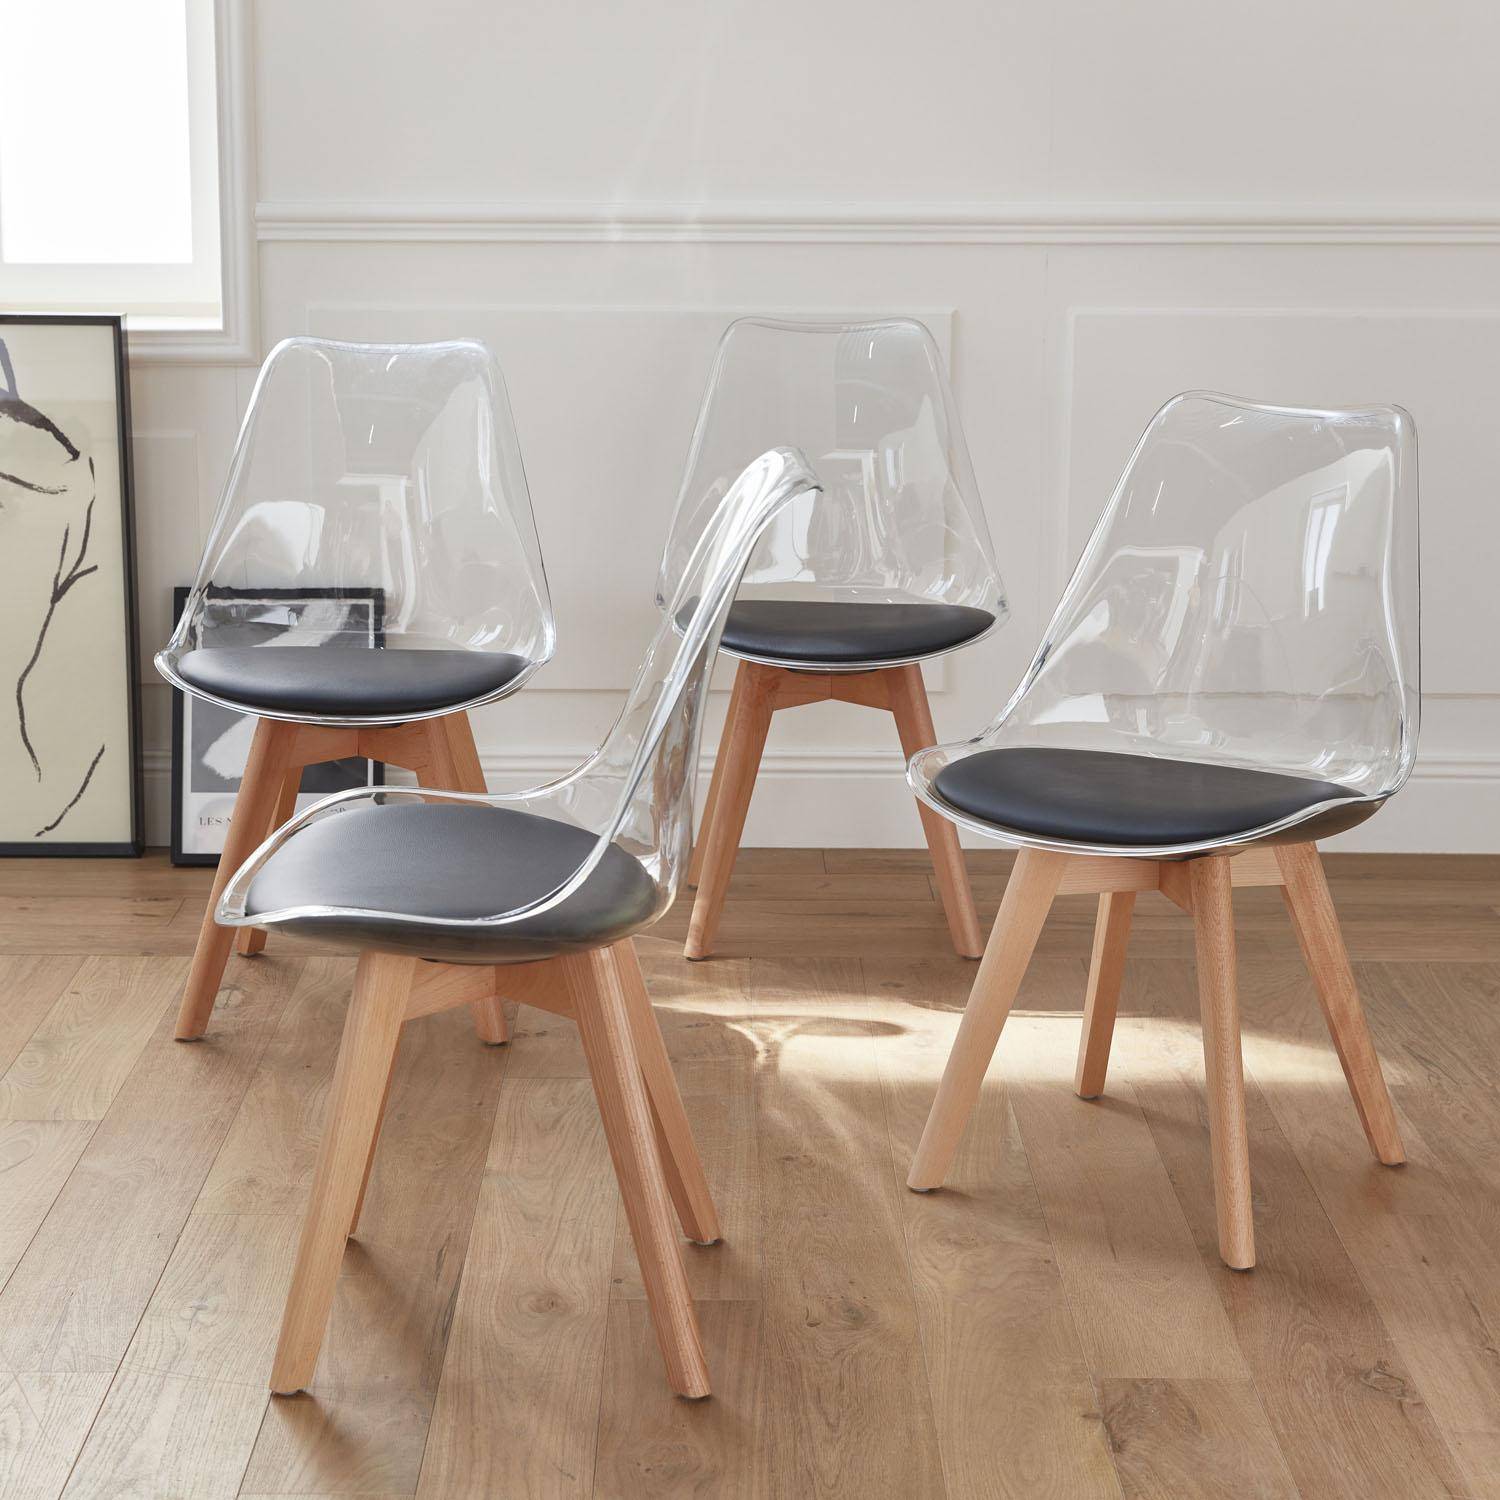 Lot de 4 chaises scandinaves - Lagertha - pieds bois, fauteuils 1 place, coussin noir, coque transparente ,sweeek,Photo2